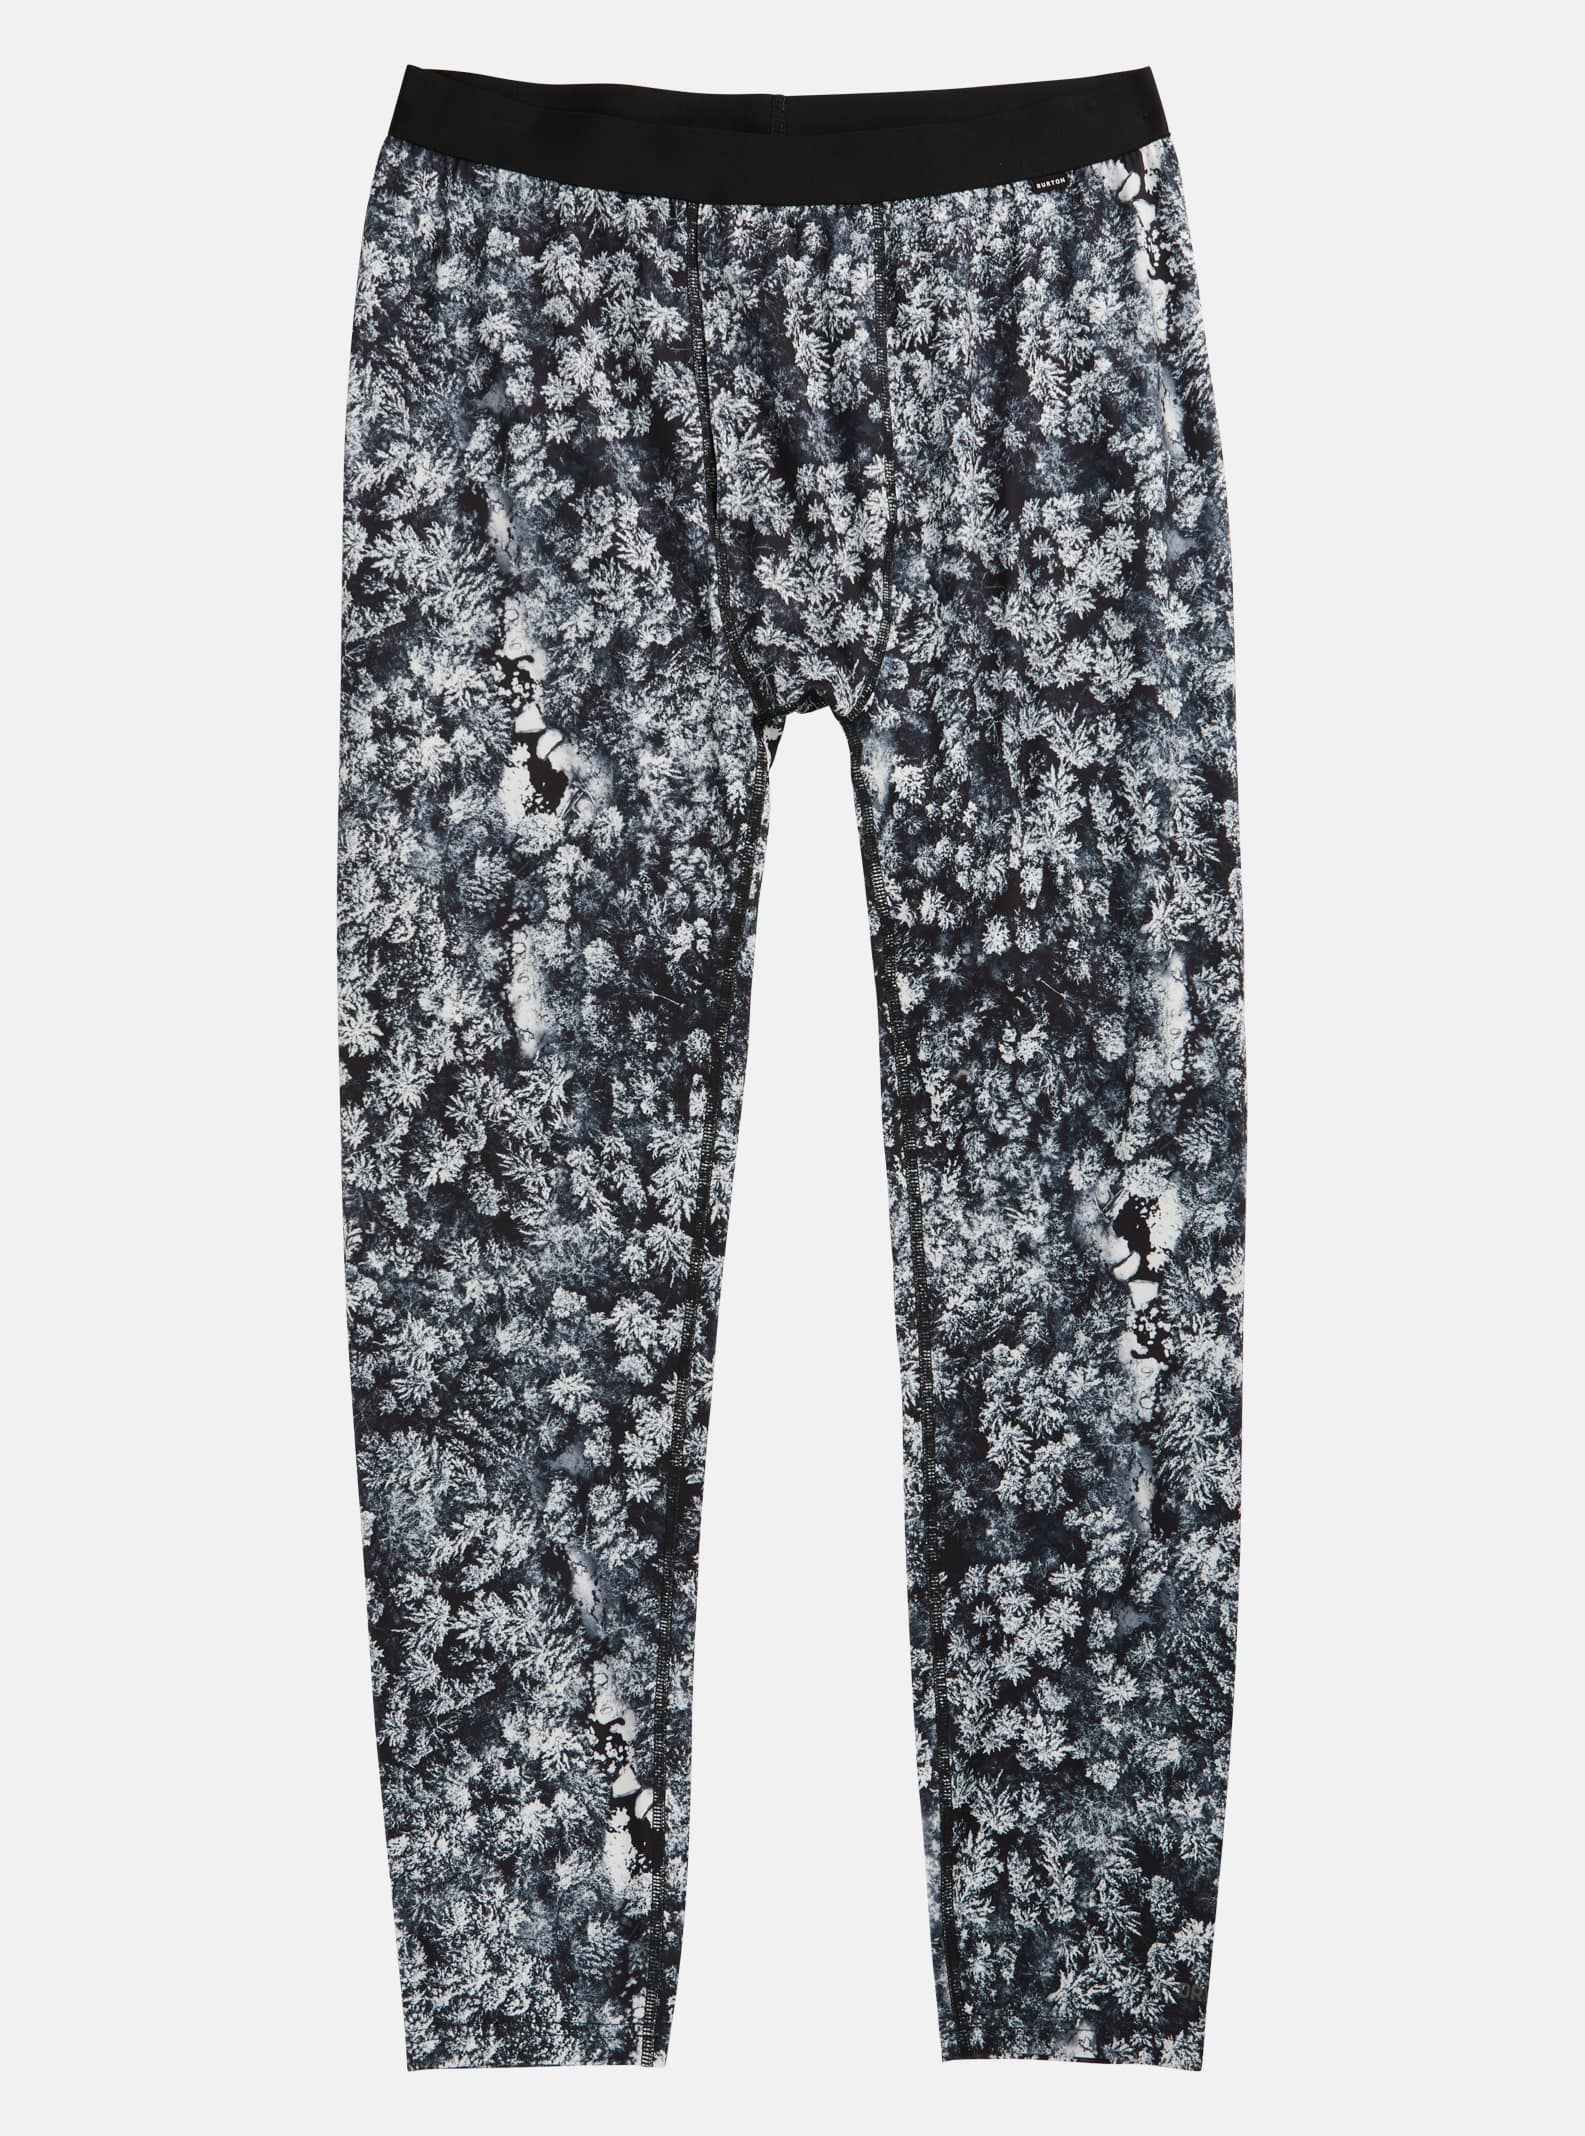 Burton - Pantalon sous-vêtement intermédiaire homme, Aerial Pines, XL